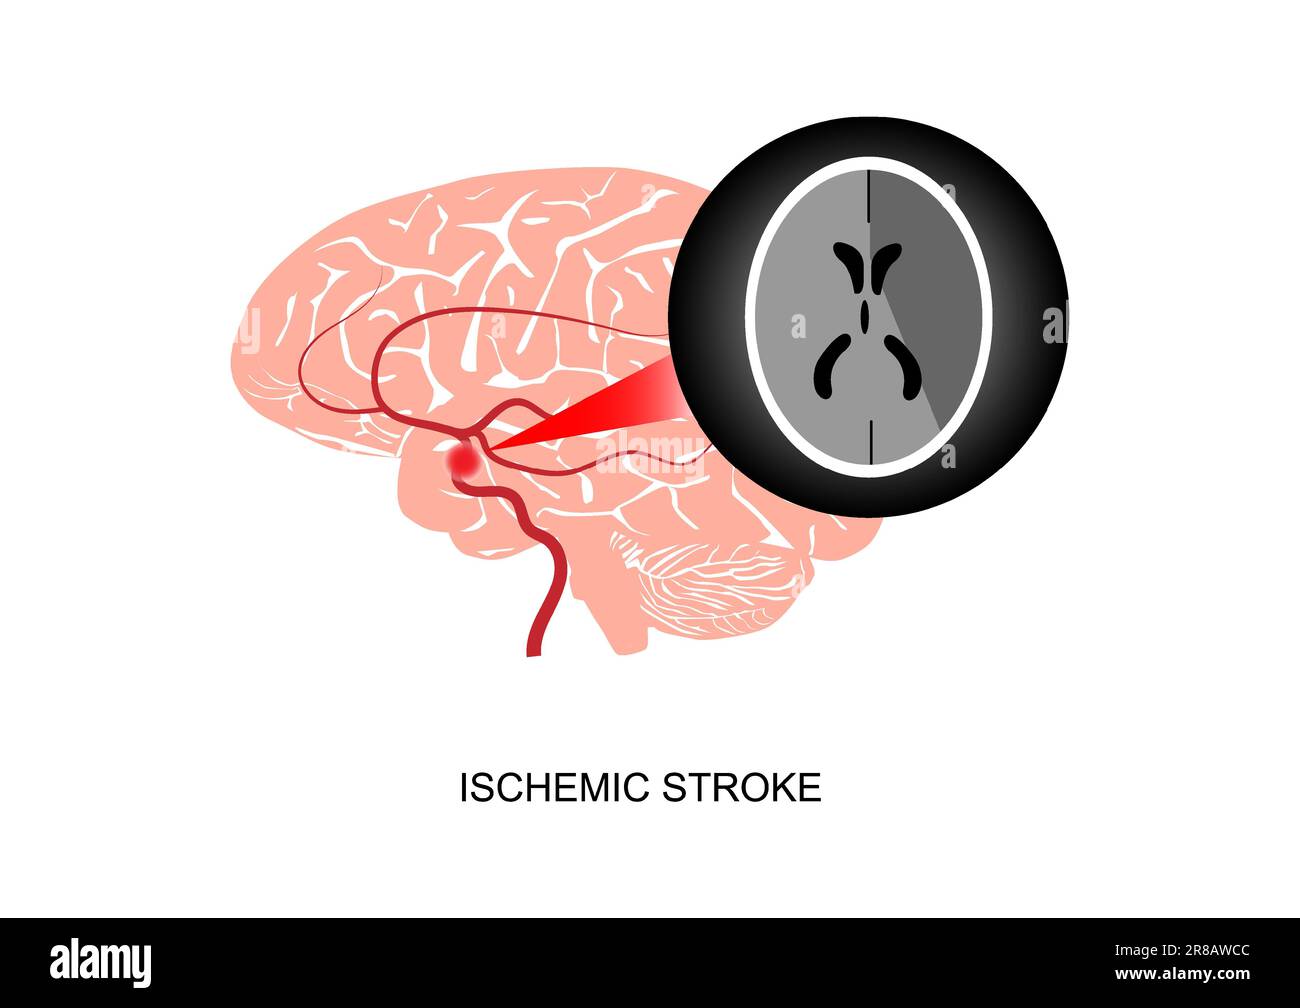 Ilustración de infarto cerebral o accidente cerebrovascular isquémico e ...